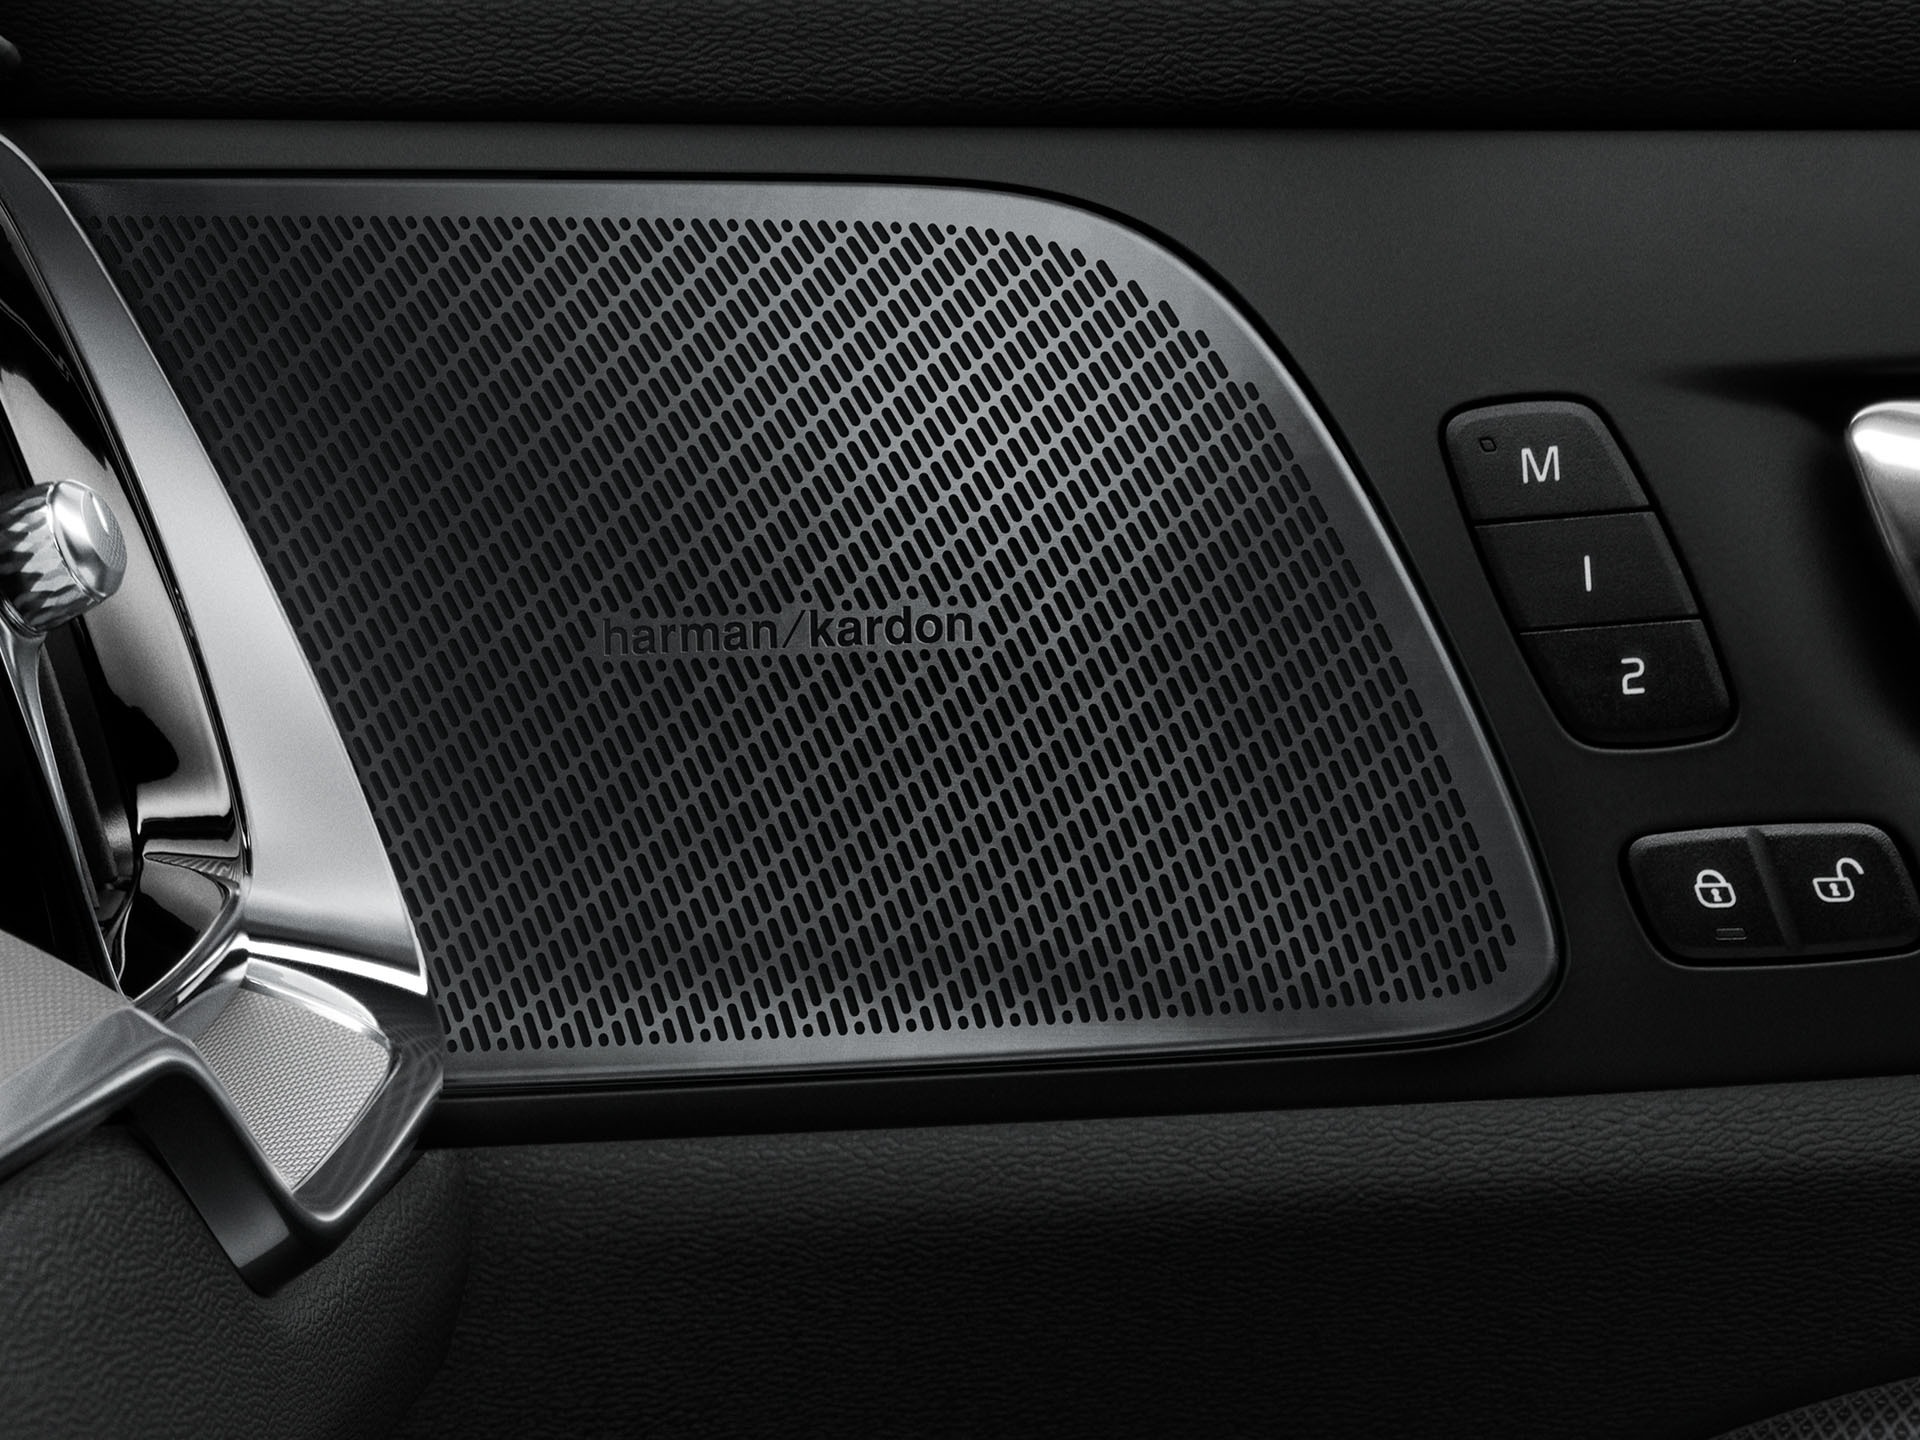 Bowers & Wilkins speaker inside a Volvo S60